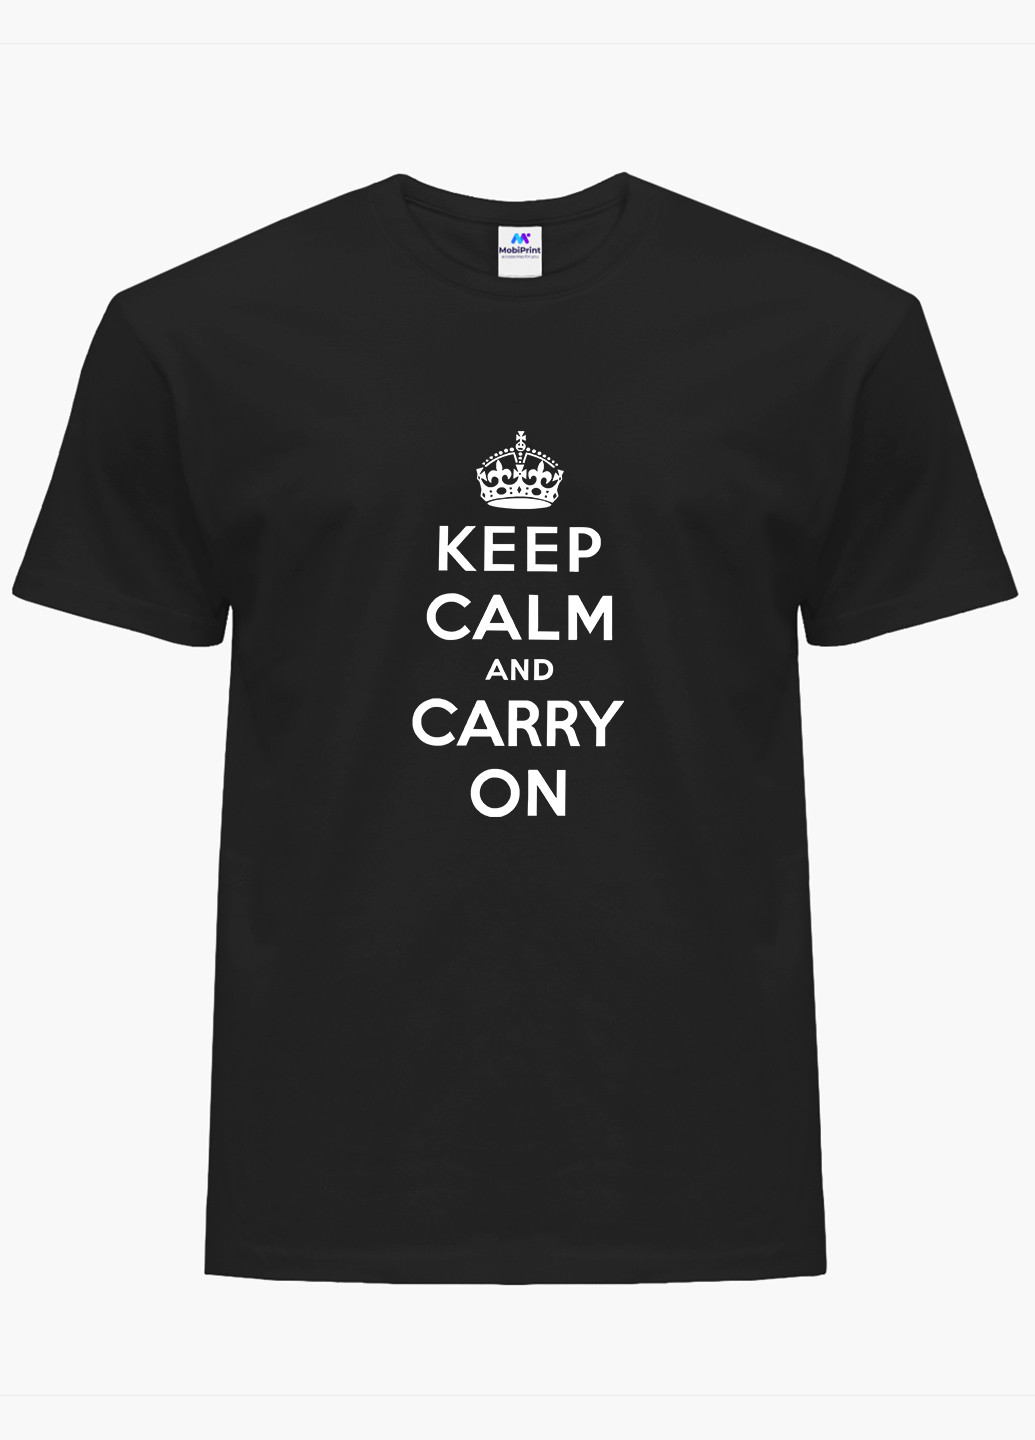 Черная демисезон футболка женская сохраняй спокойствие (keep calm) (8976-2009) xxl MobiPrint